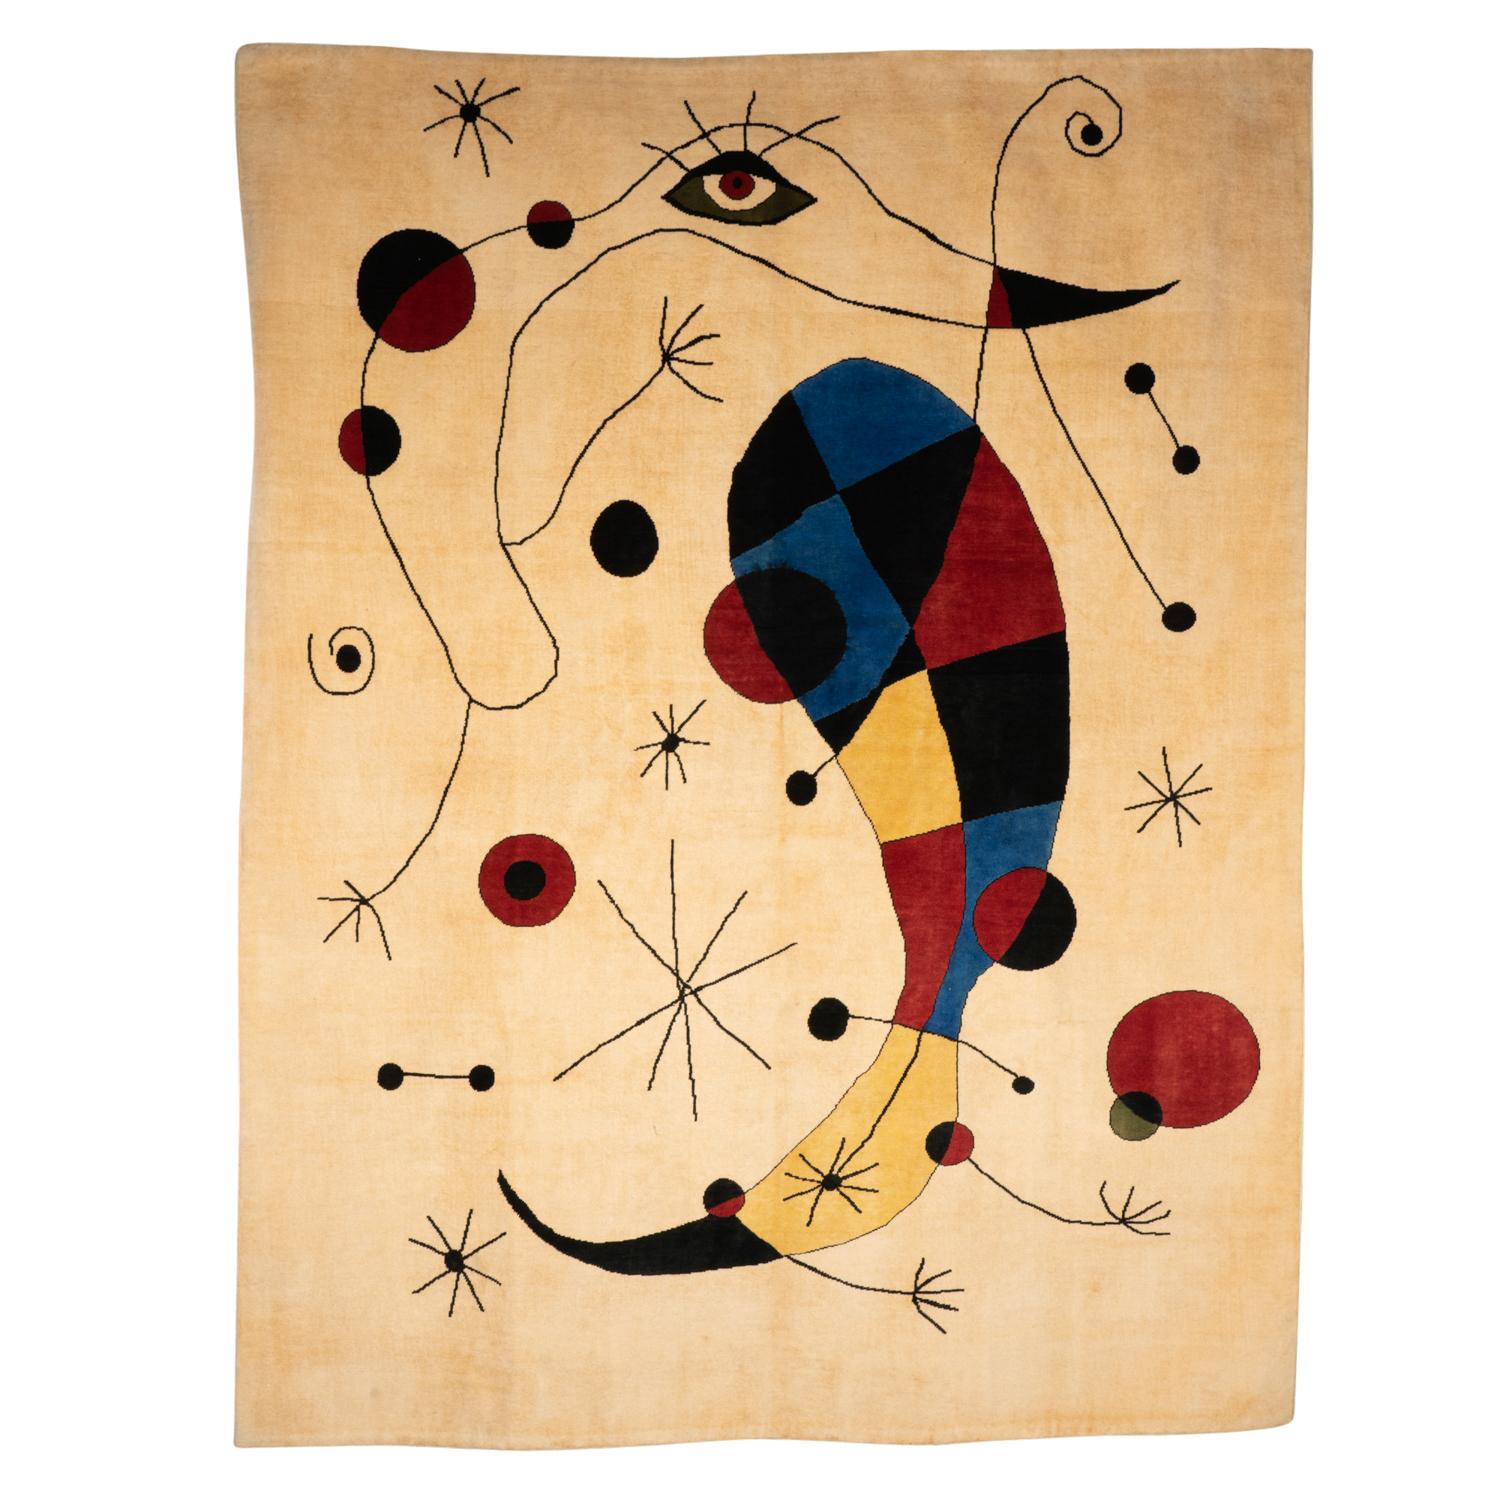 Tapis, ou tapisserie, inspiré par Joan Miro, dans des tons de rouge, jaune, bleu et noir sur un fond beige. Noué à la main et en laine mérinos.

Travail d'artisans contemporains.

Numéroté 2/8. Surface : 5 M2. Densité : 700000 nœuds

Livré avec un